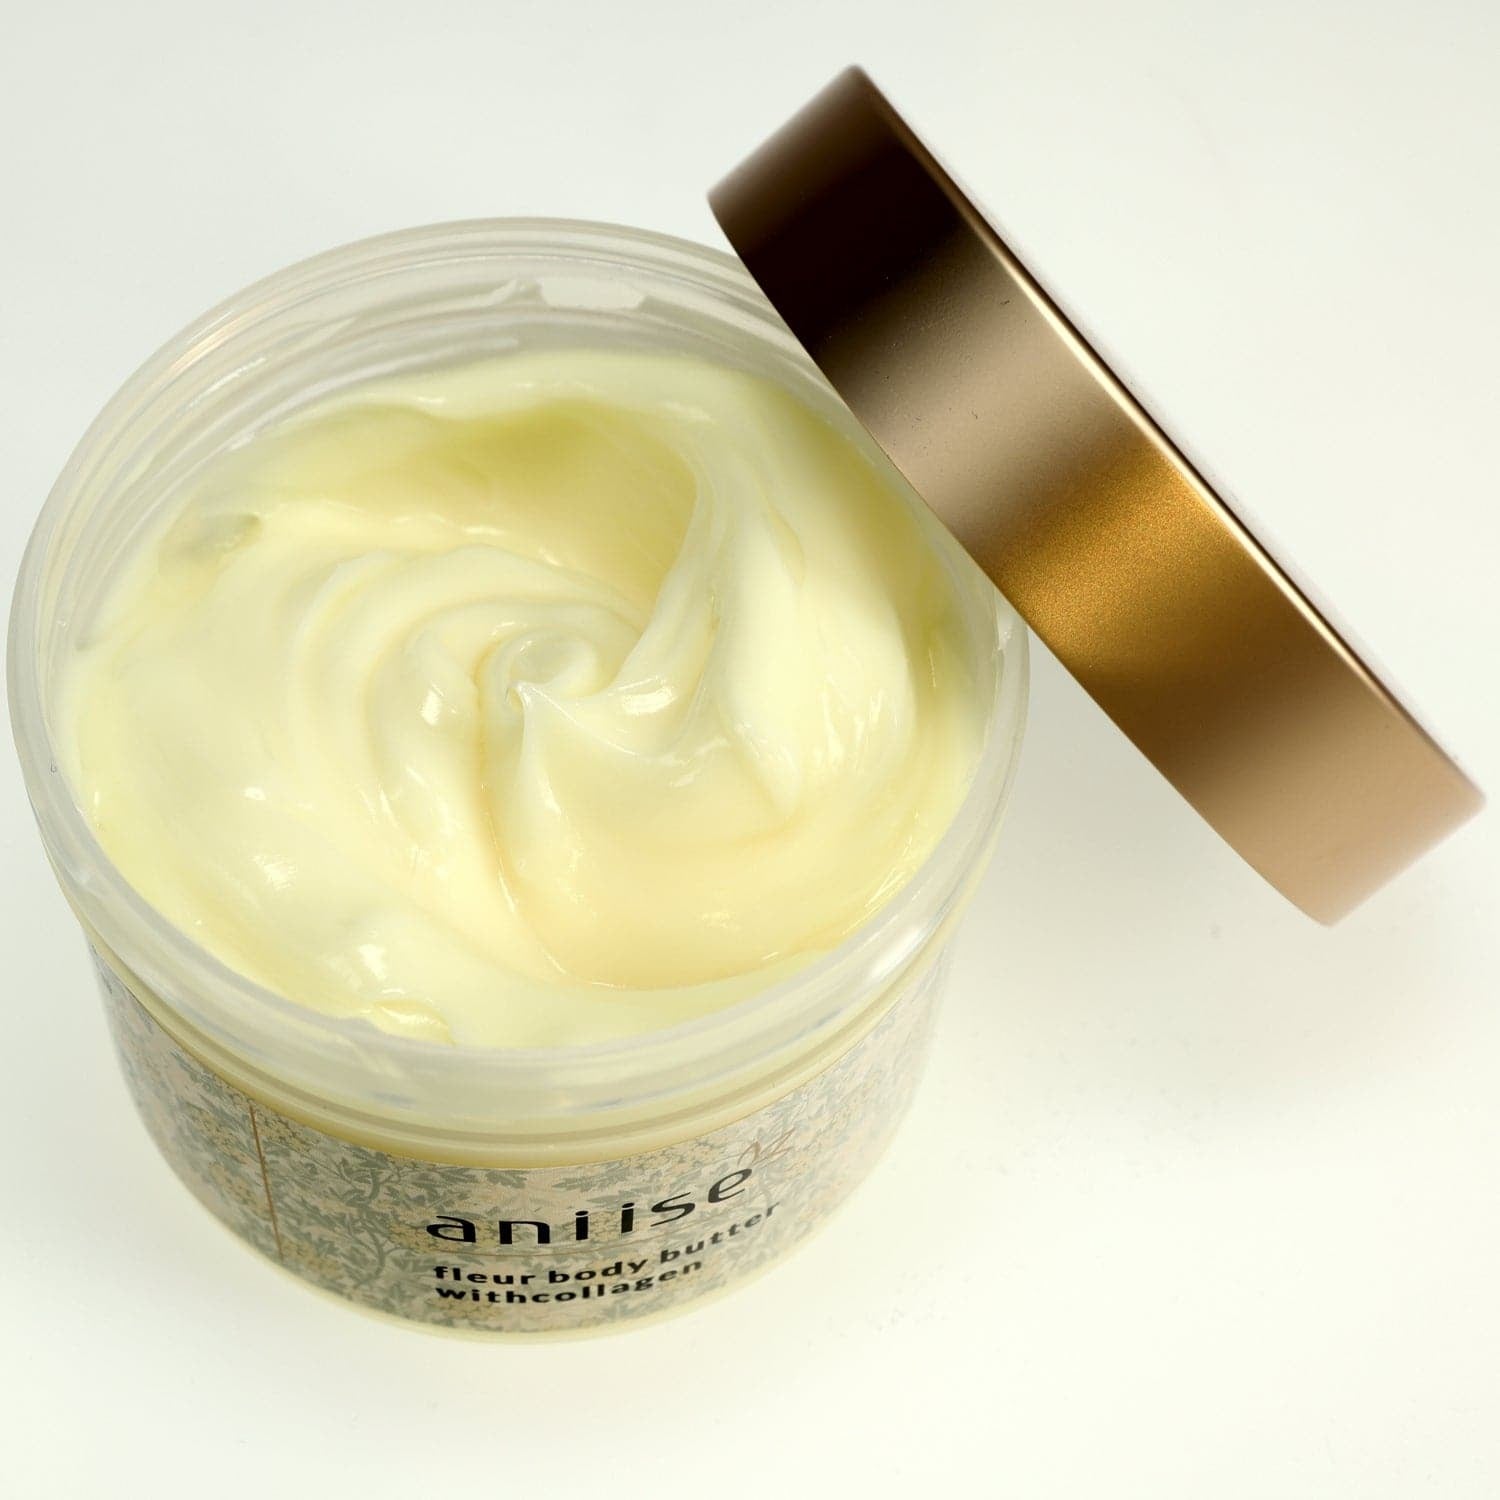 Moisturizing Body Butter Cream with Collagen - Unisex